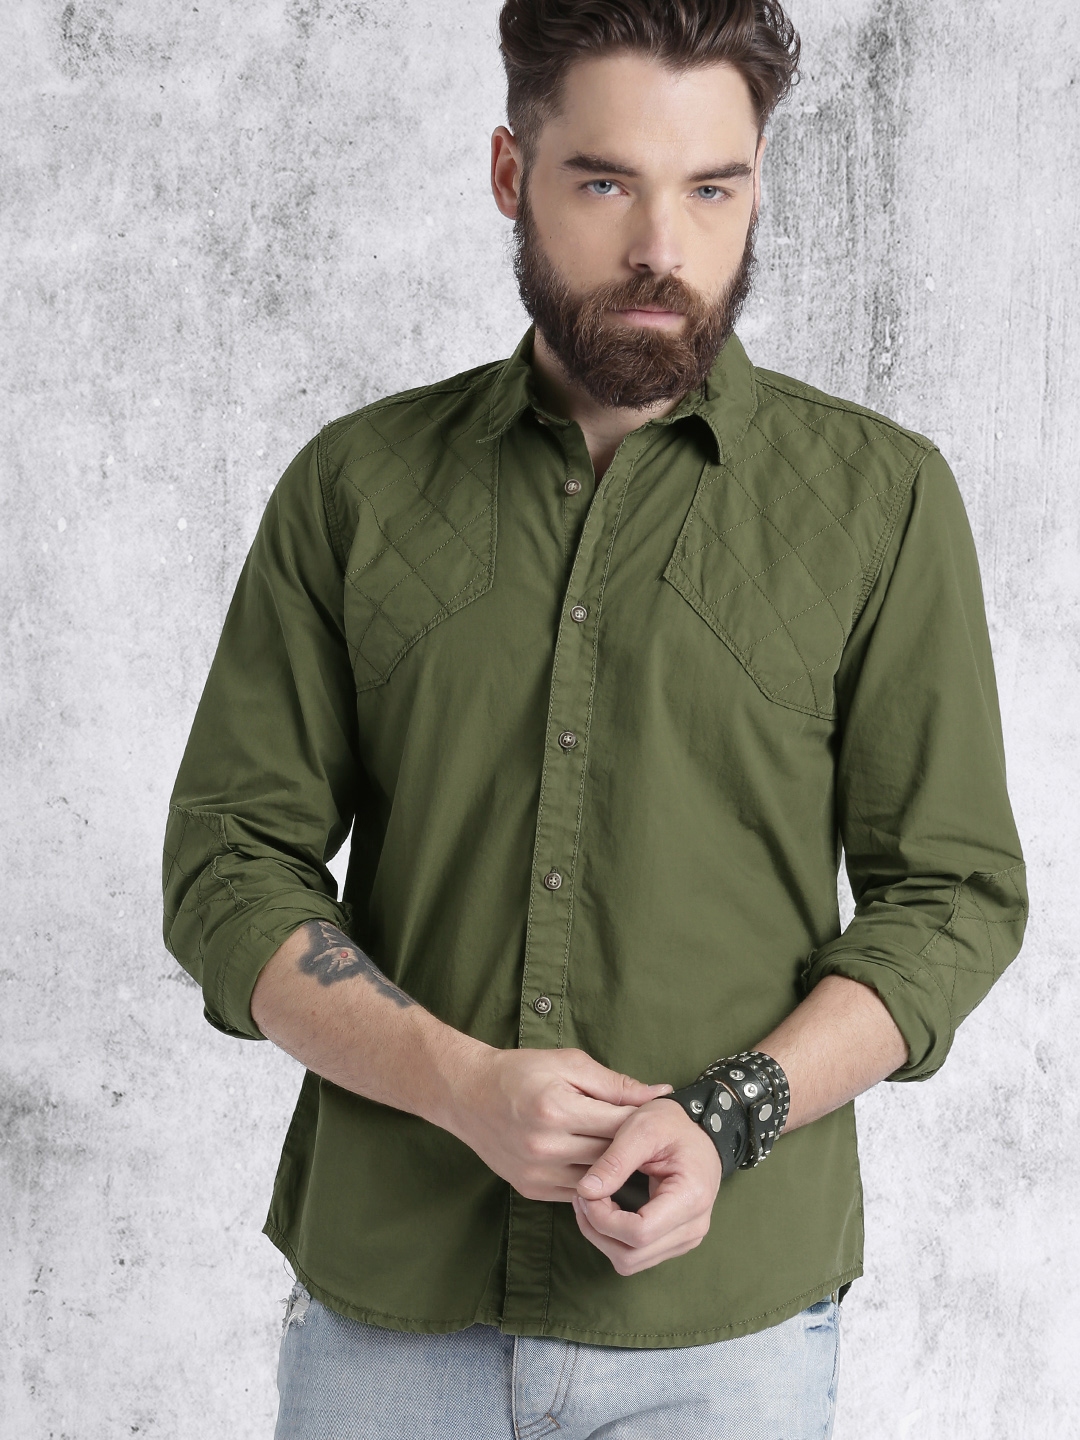 Buy RDSTR Men Olive Green Solid Casual Shirt - Shirts for Men 1794492 ...